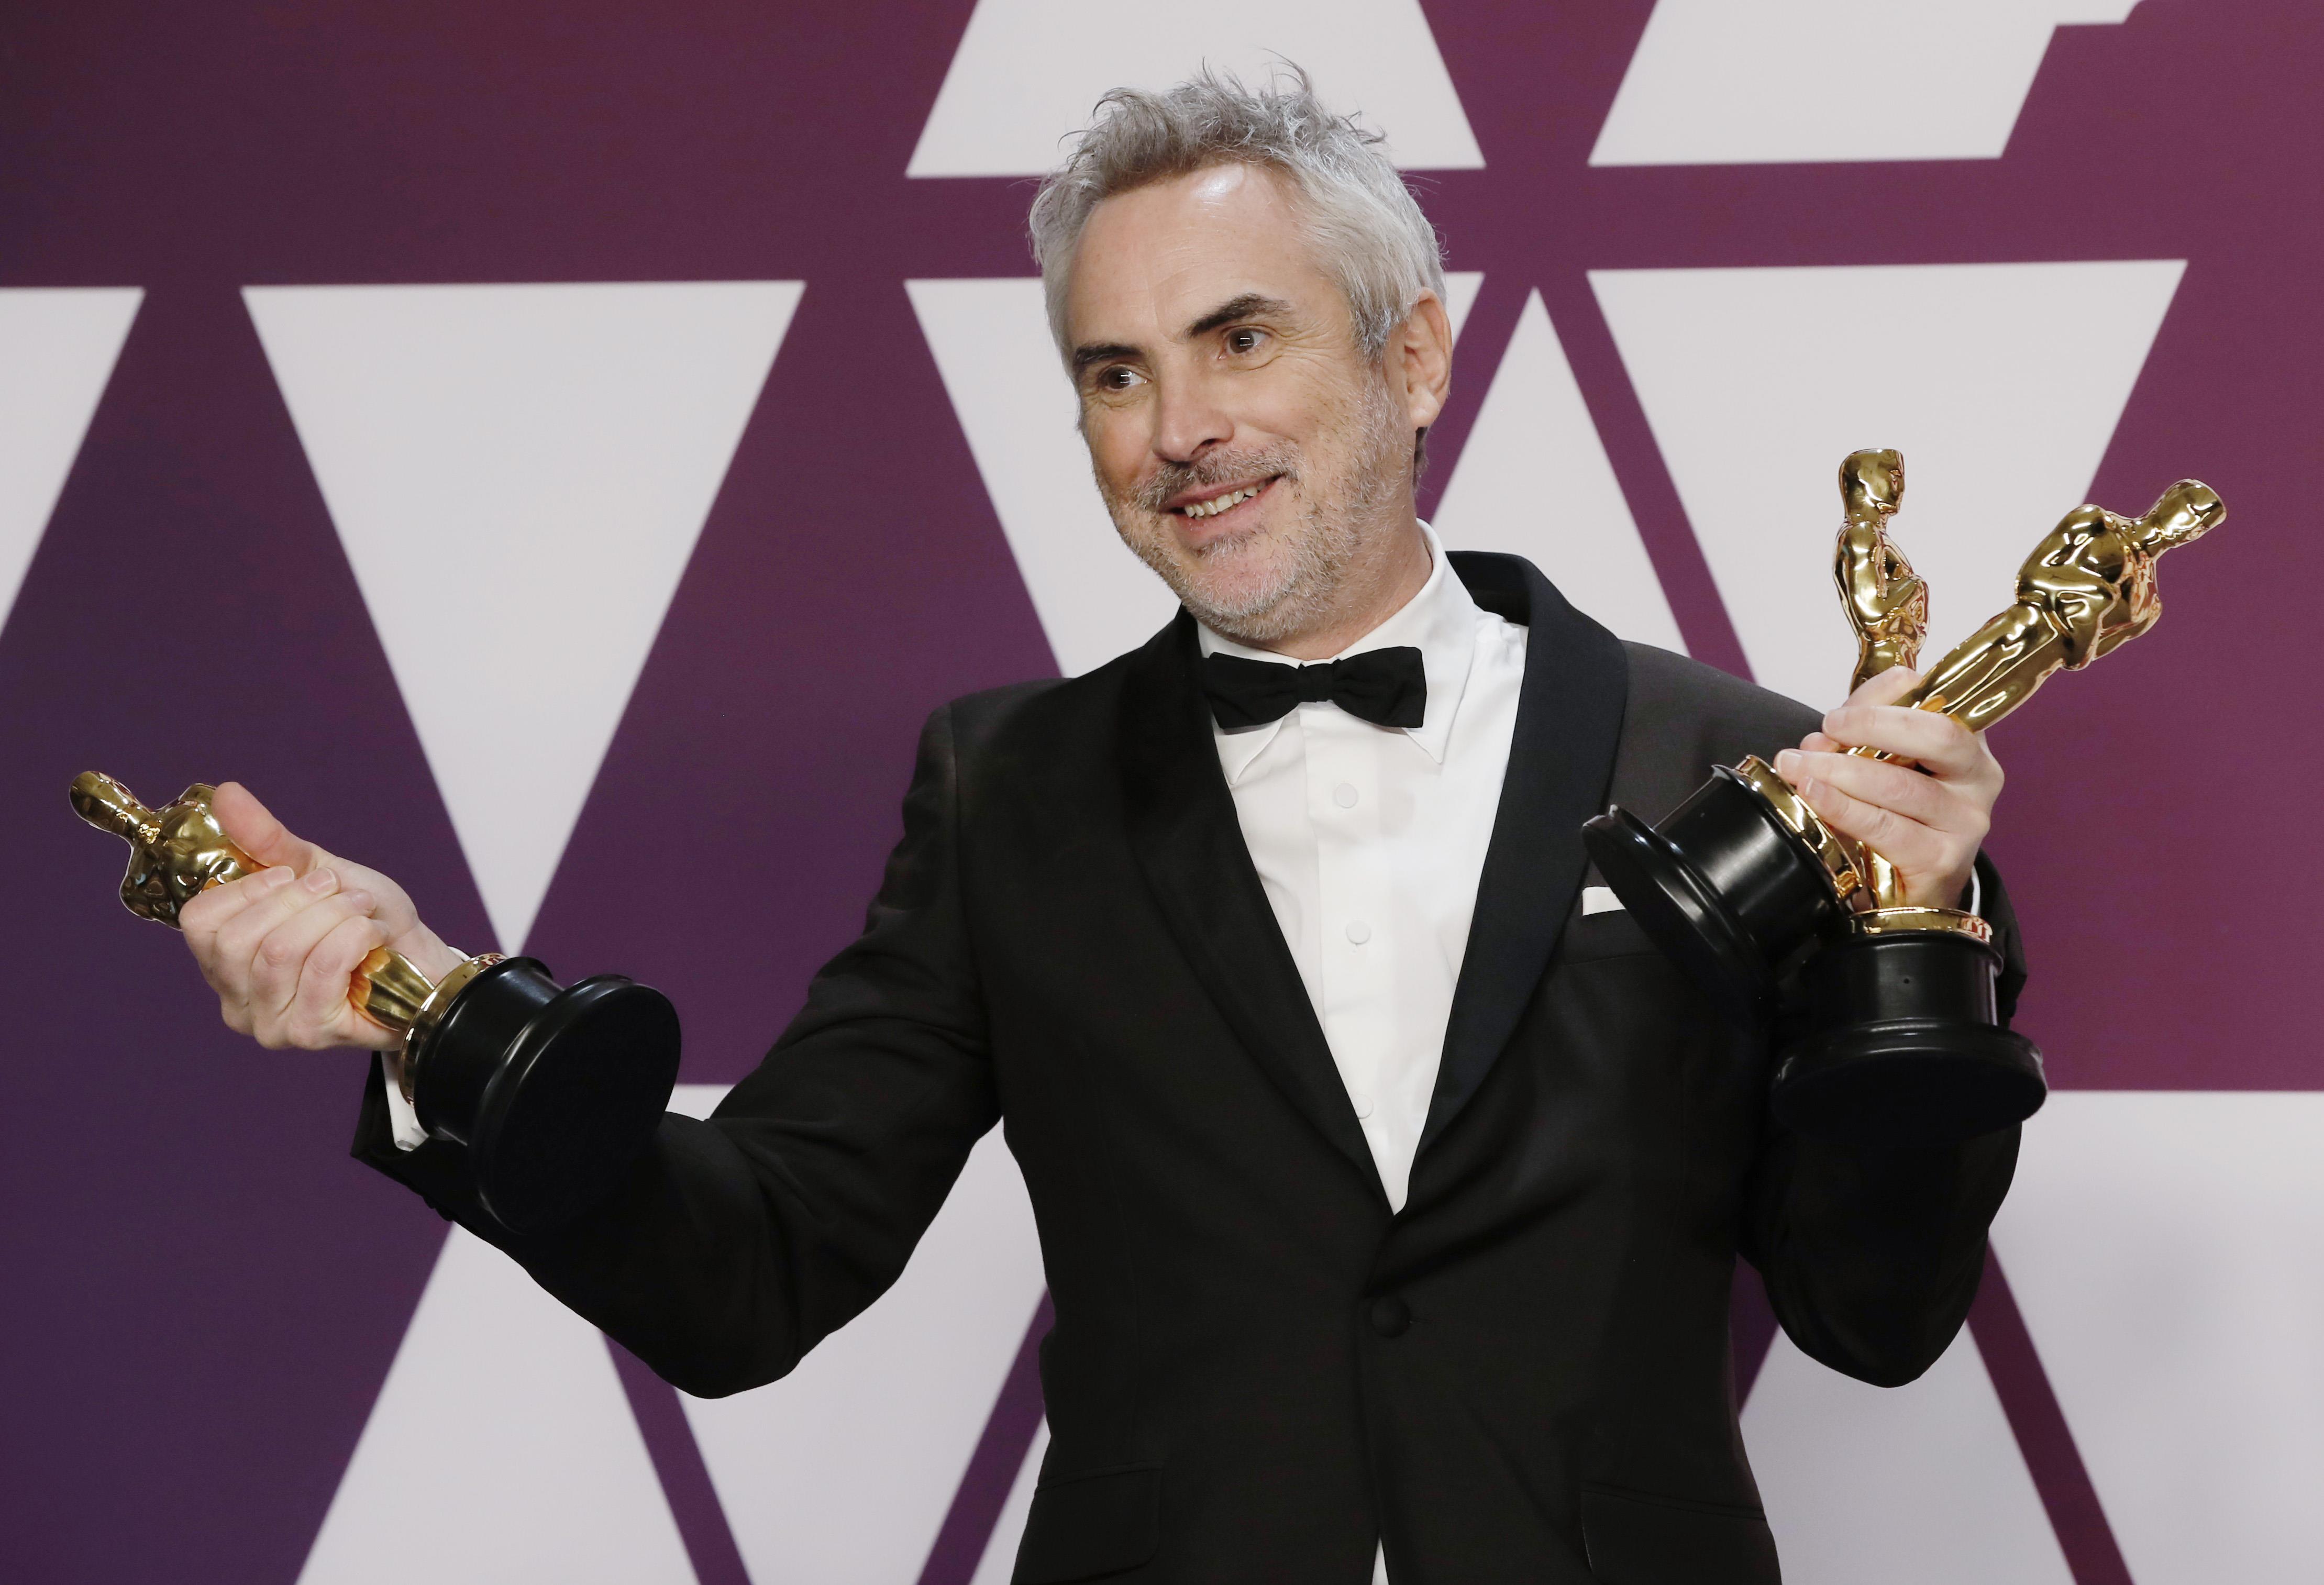 Alfonso Cuarón ganó dos premios Oscar a "Mejor Director" por "Gravity" y "Roma". (Foto: REUTERS/Mike Segar)